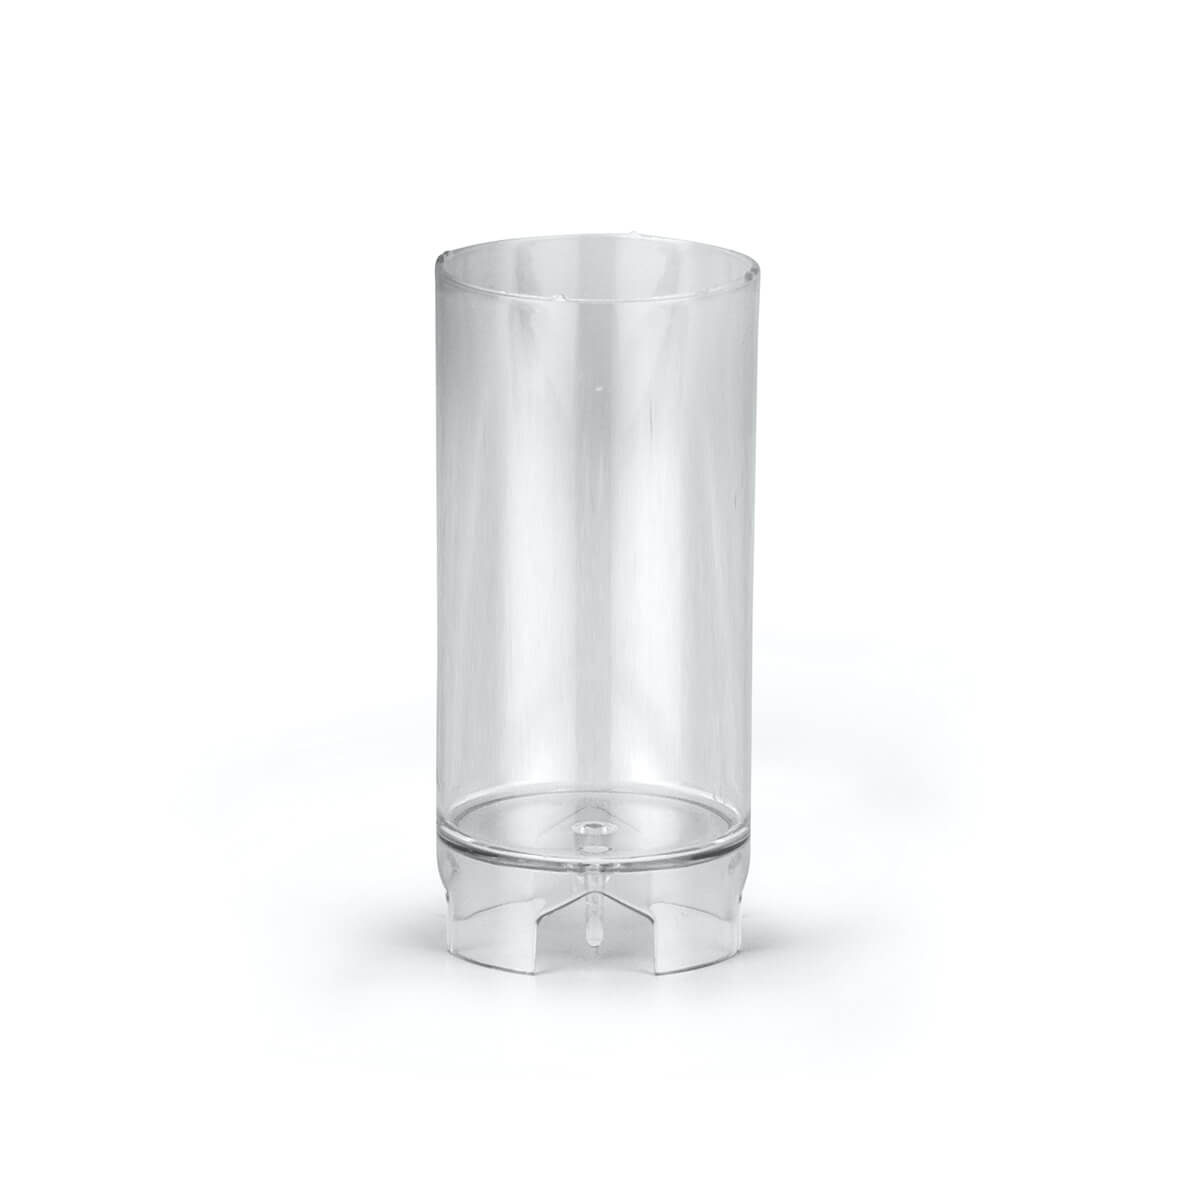 Giessform für Kerzen - Zylinder 97/52 mm